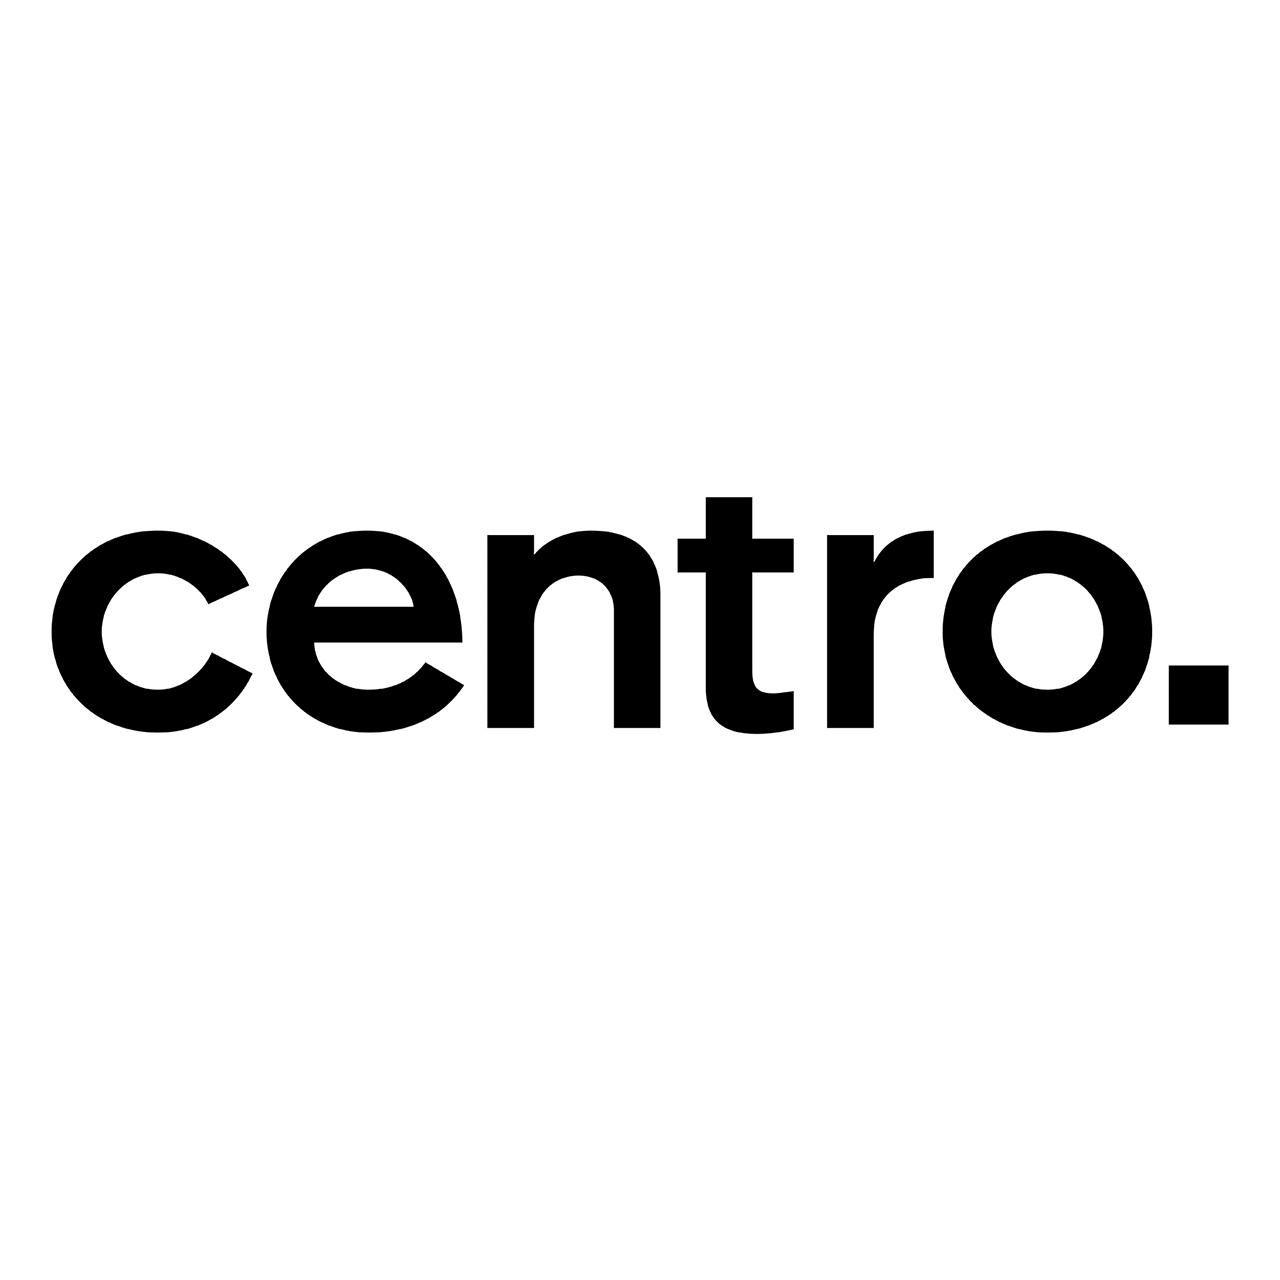 Centro Logo - Centro Logos